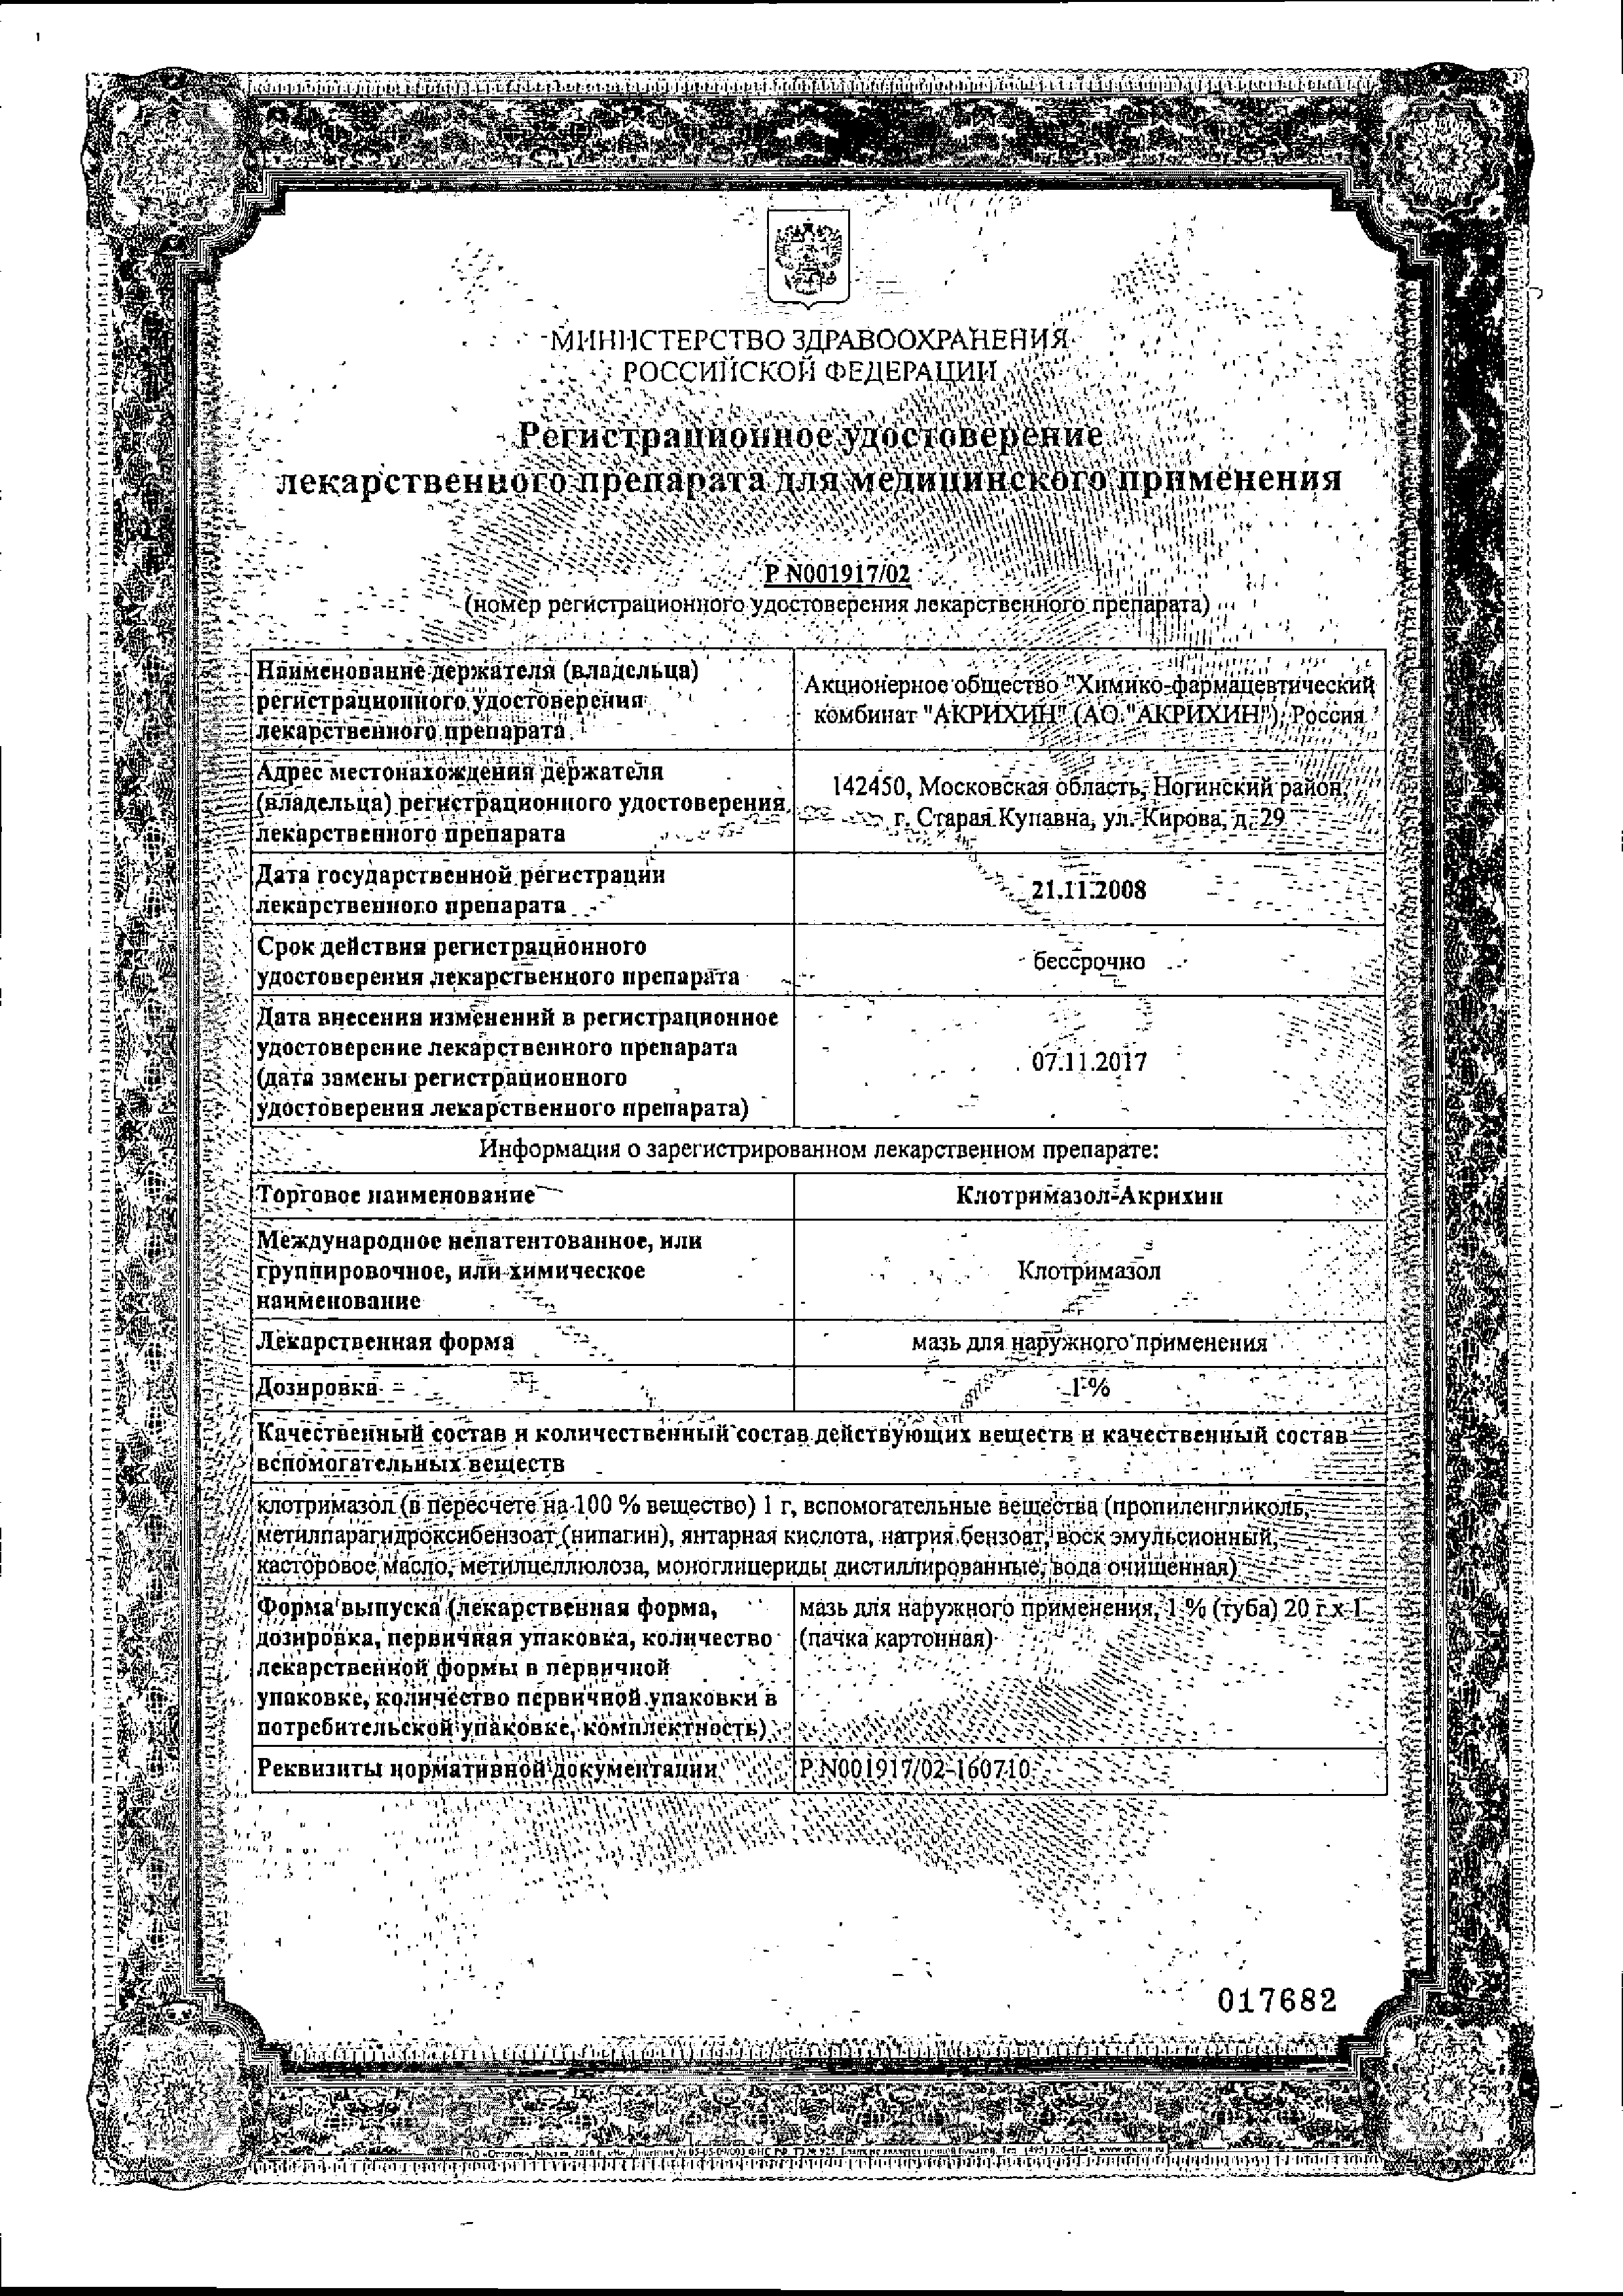 Клотримазол-Акрихин сертификат